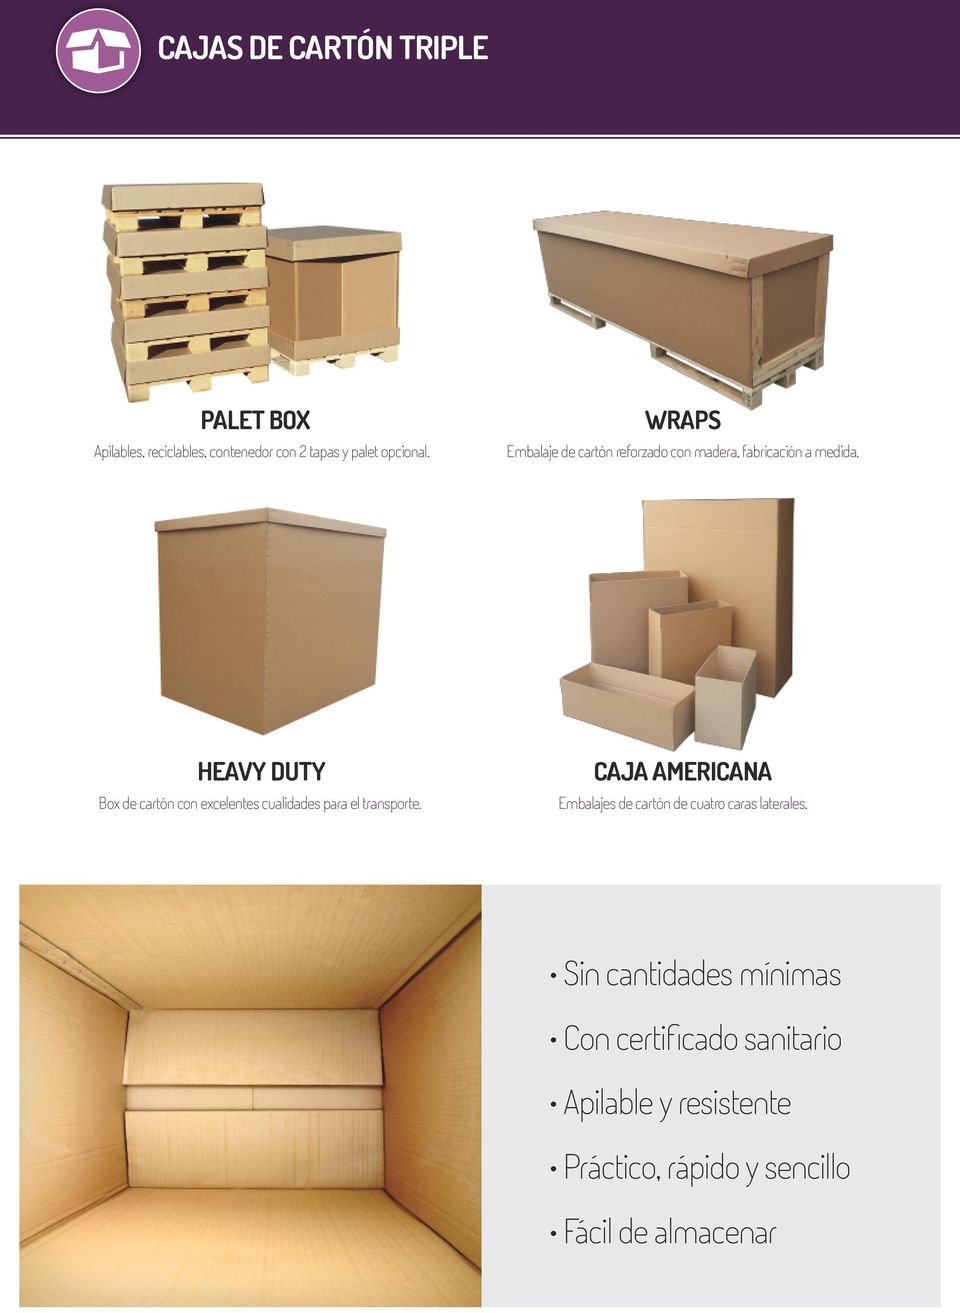 HEAVY DUTY CAJA AMERICANA Box de cartón con excelentes cualidades para el transporte.